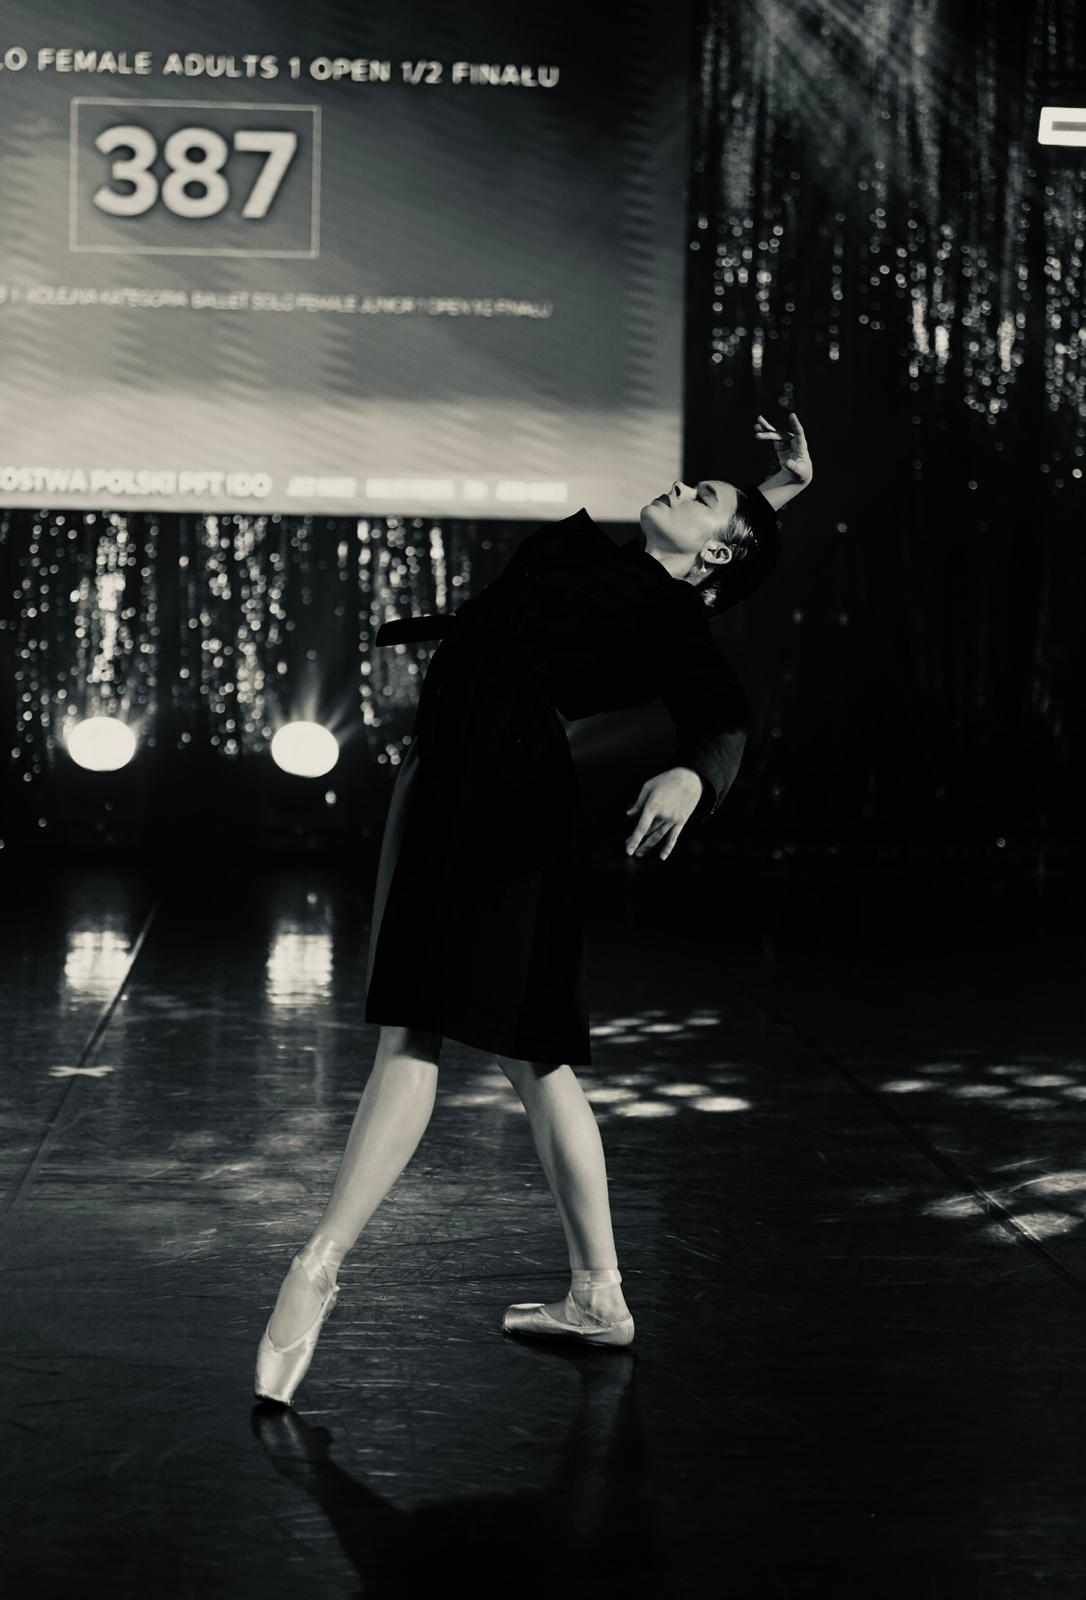 Tancerka tańczy na scenie, zdjęcie jest czarno-białe.